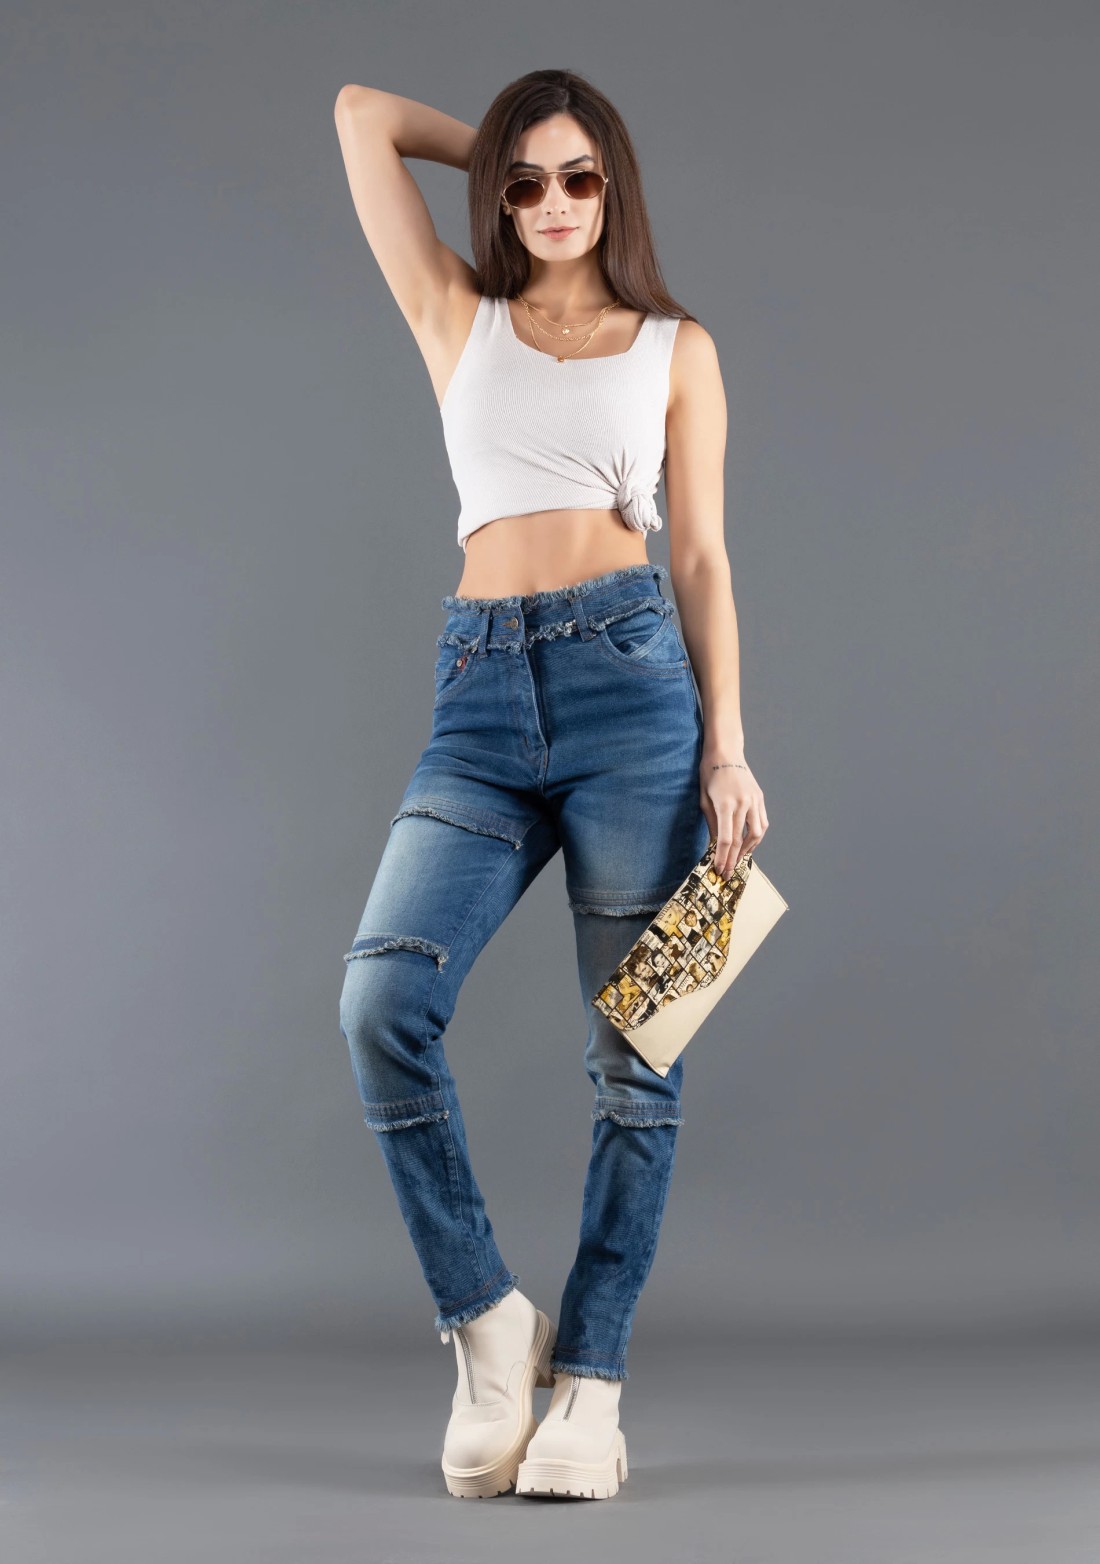 Rhysley Deep Blue Slim Fit Women's Fashion Jeans